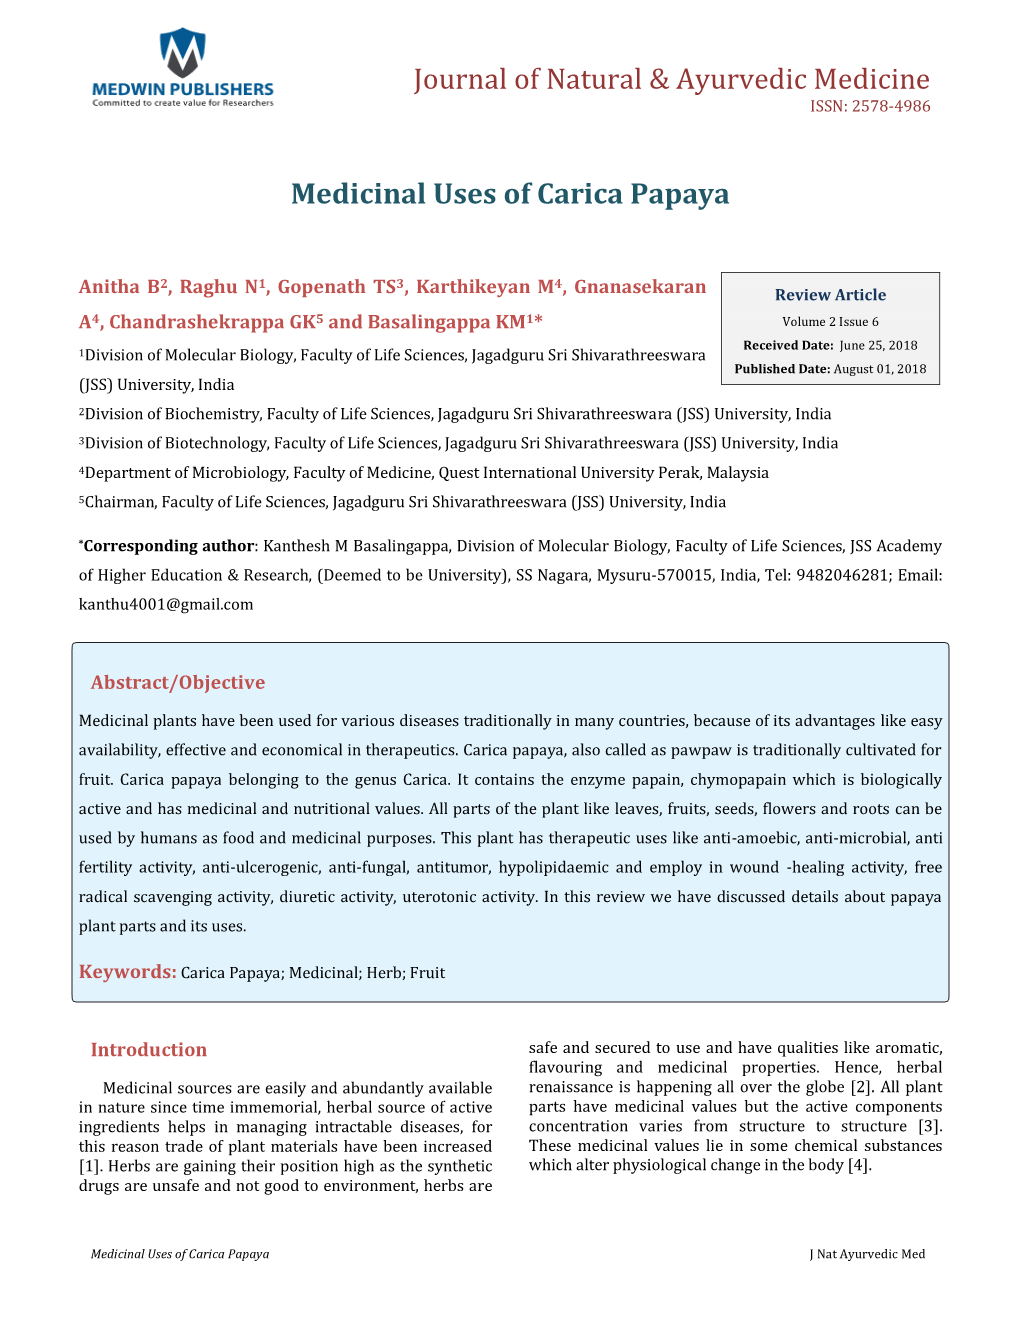 Medicinal Uses of Carica Papaya. J Nat Ayurvedic Med 2018, 2(6)